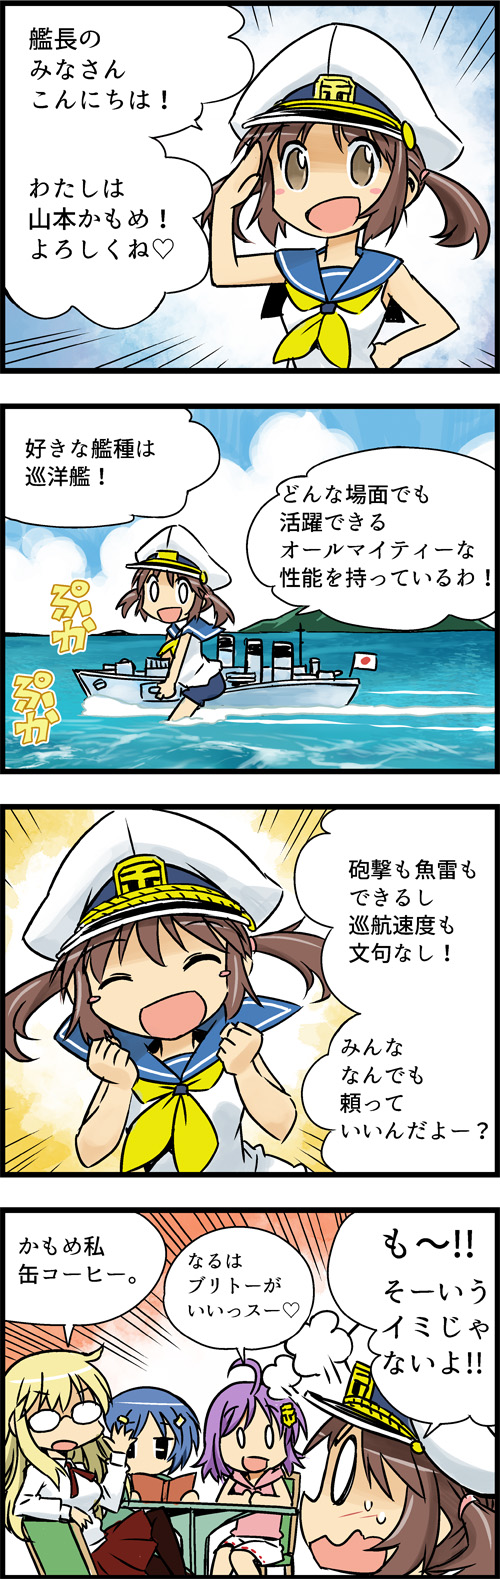 週刊 ぷかぷか艦隊 Vol 1 World Of Warships